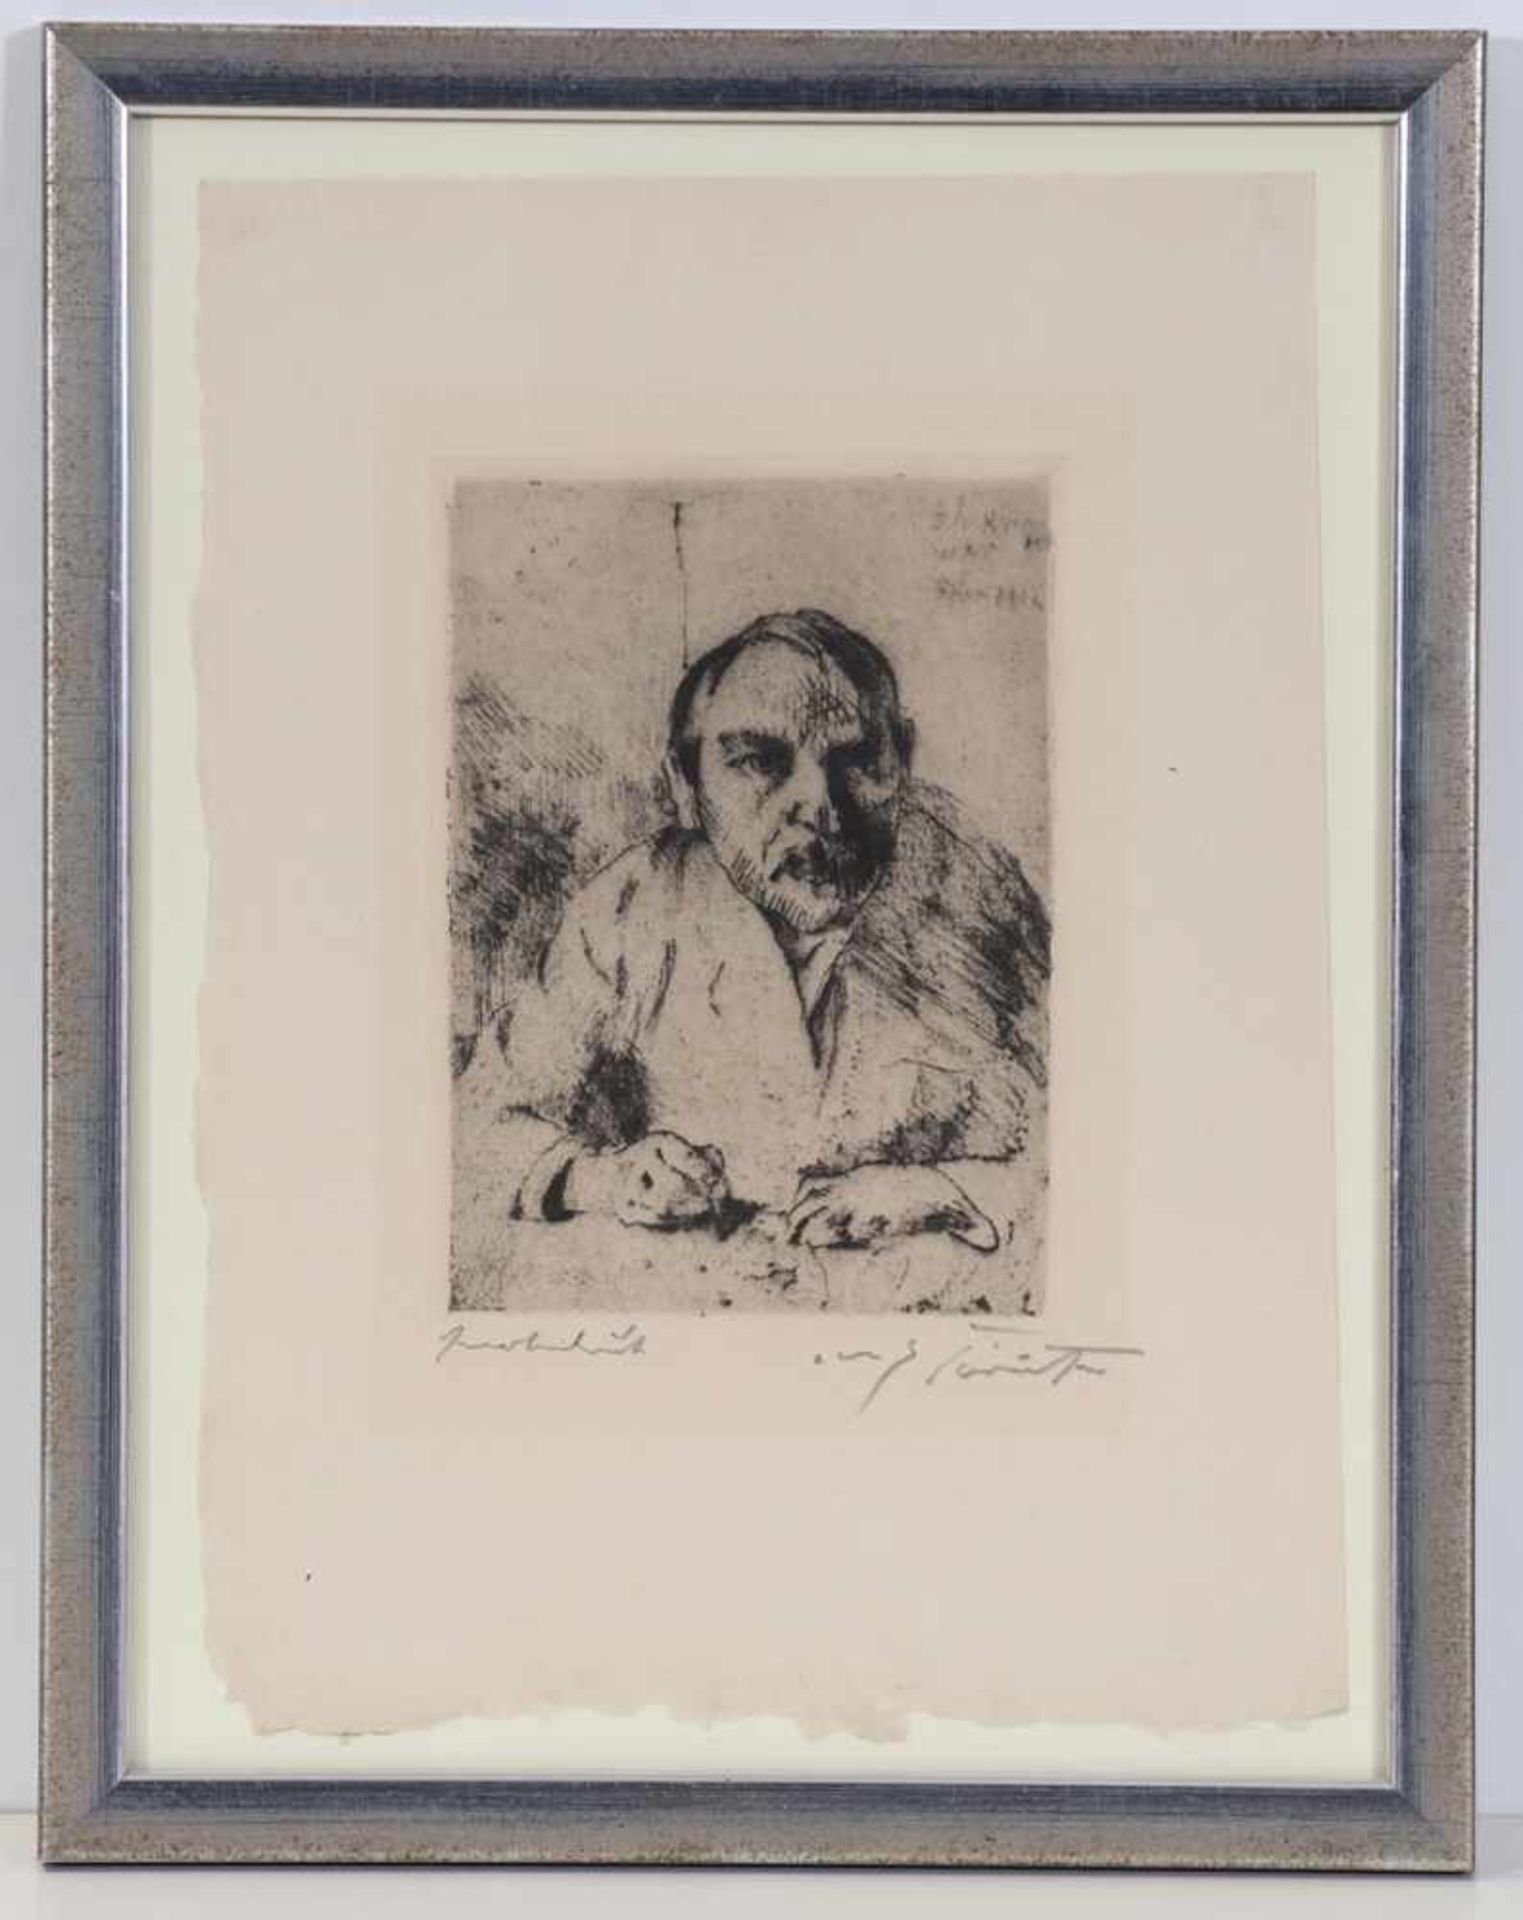 Lovis Corinth1858 Tapiau - 1925 Zandvoort - "Selbstbildnis (als ich krank war)" - - Bild 2 aus 2